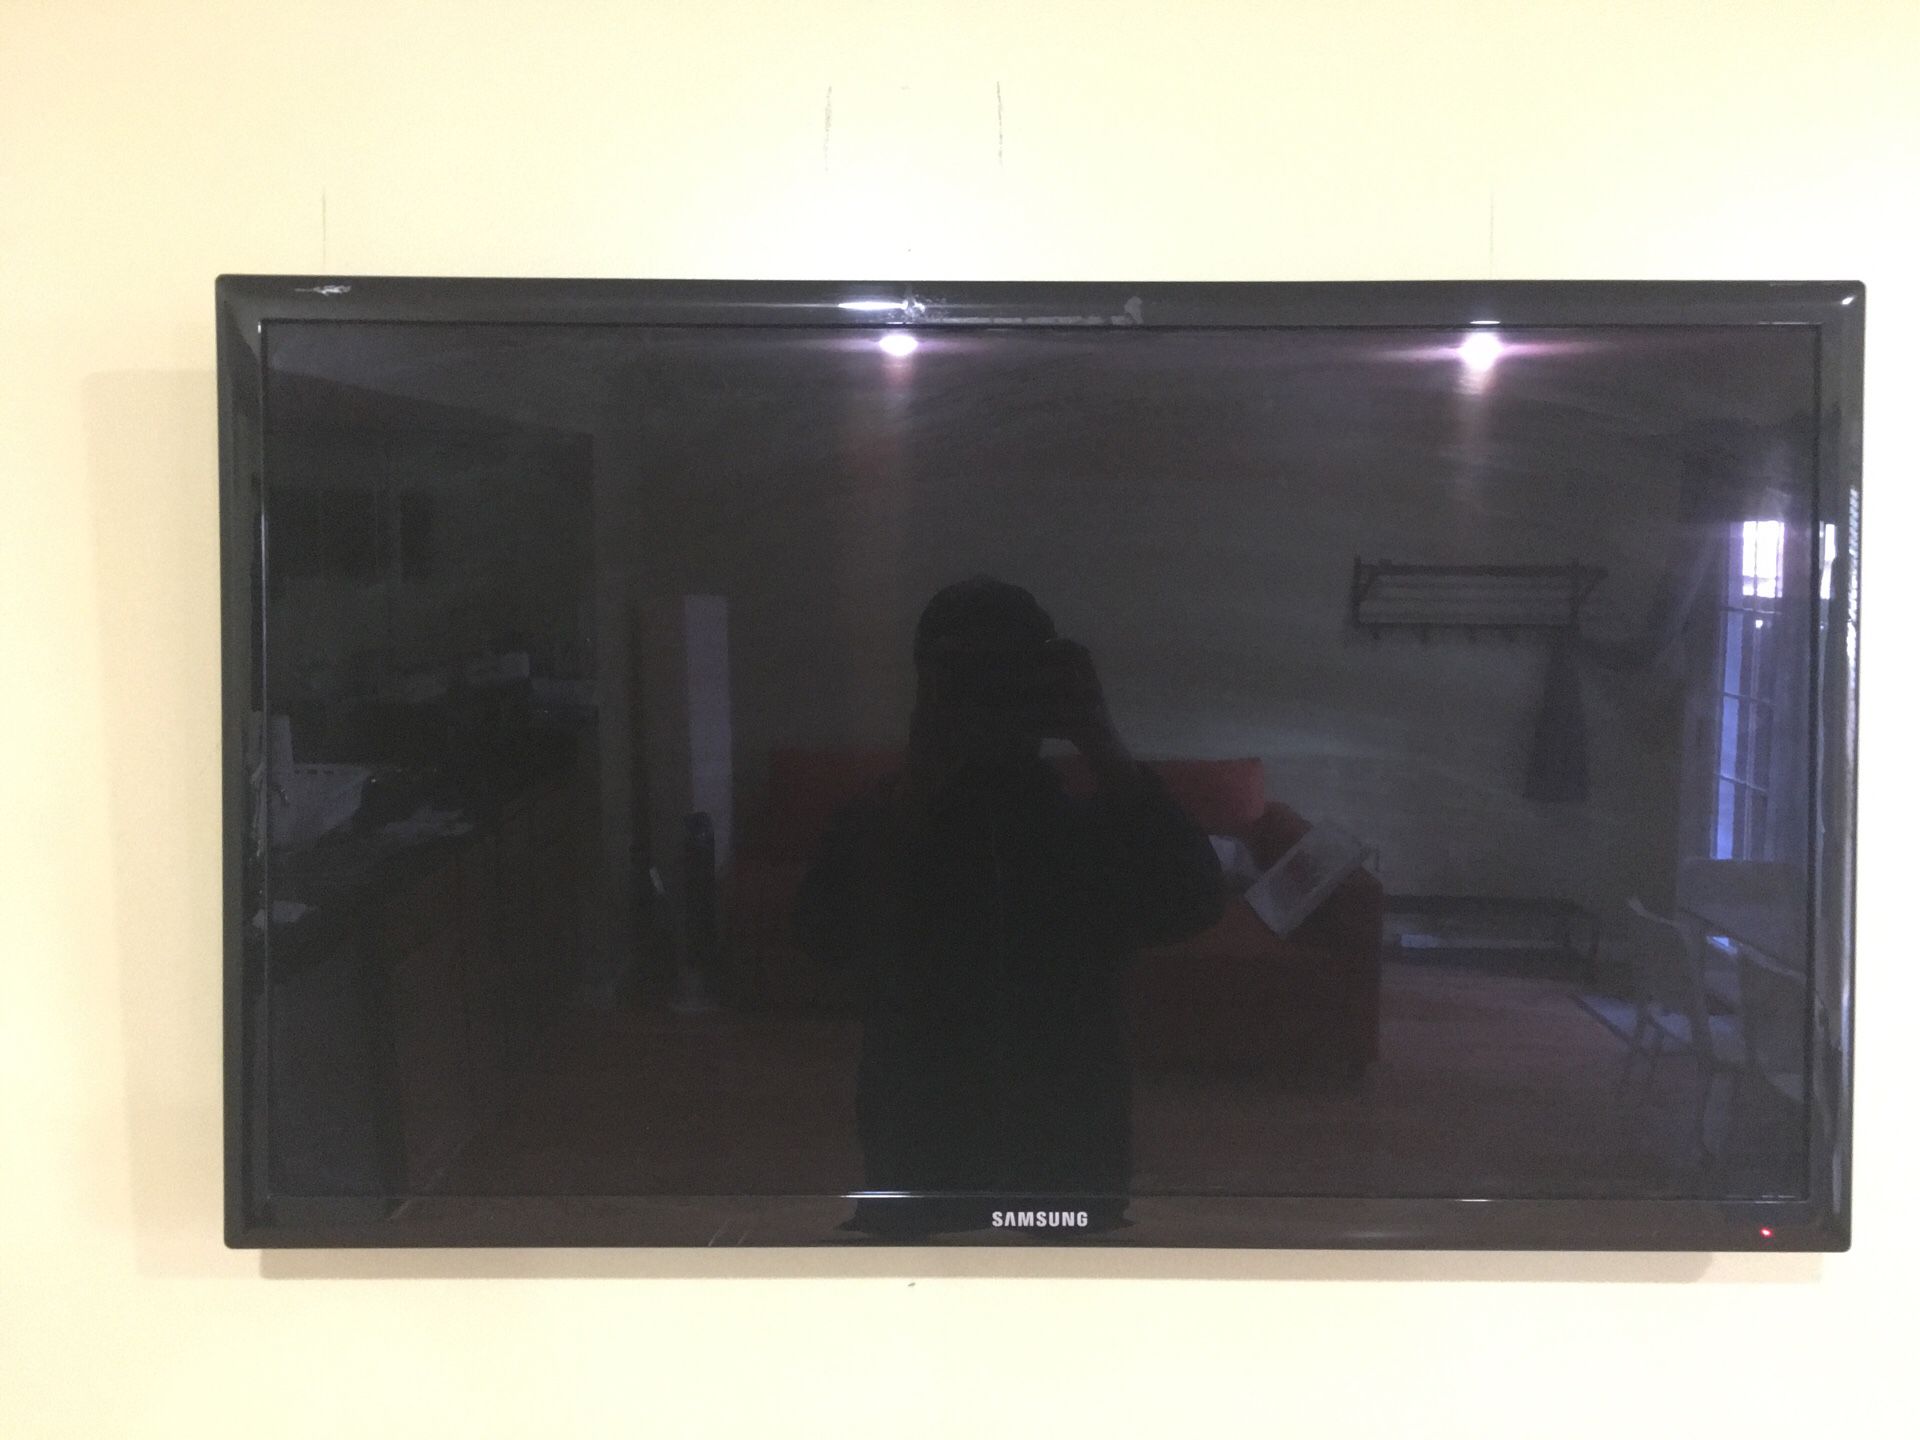 Samsung 37” LED flat screen tv